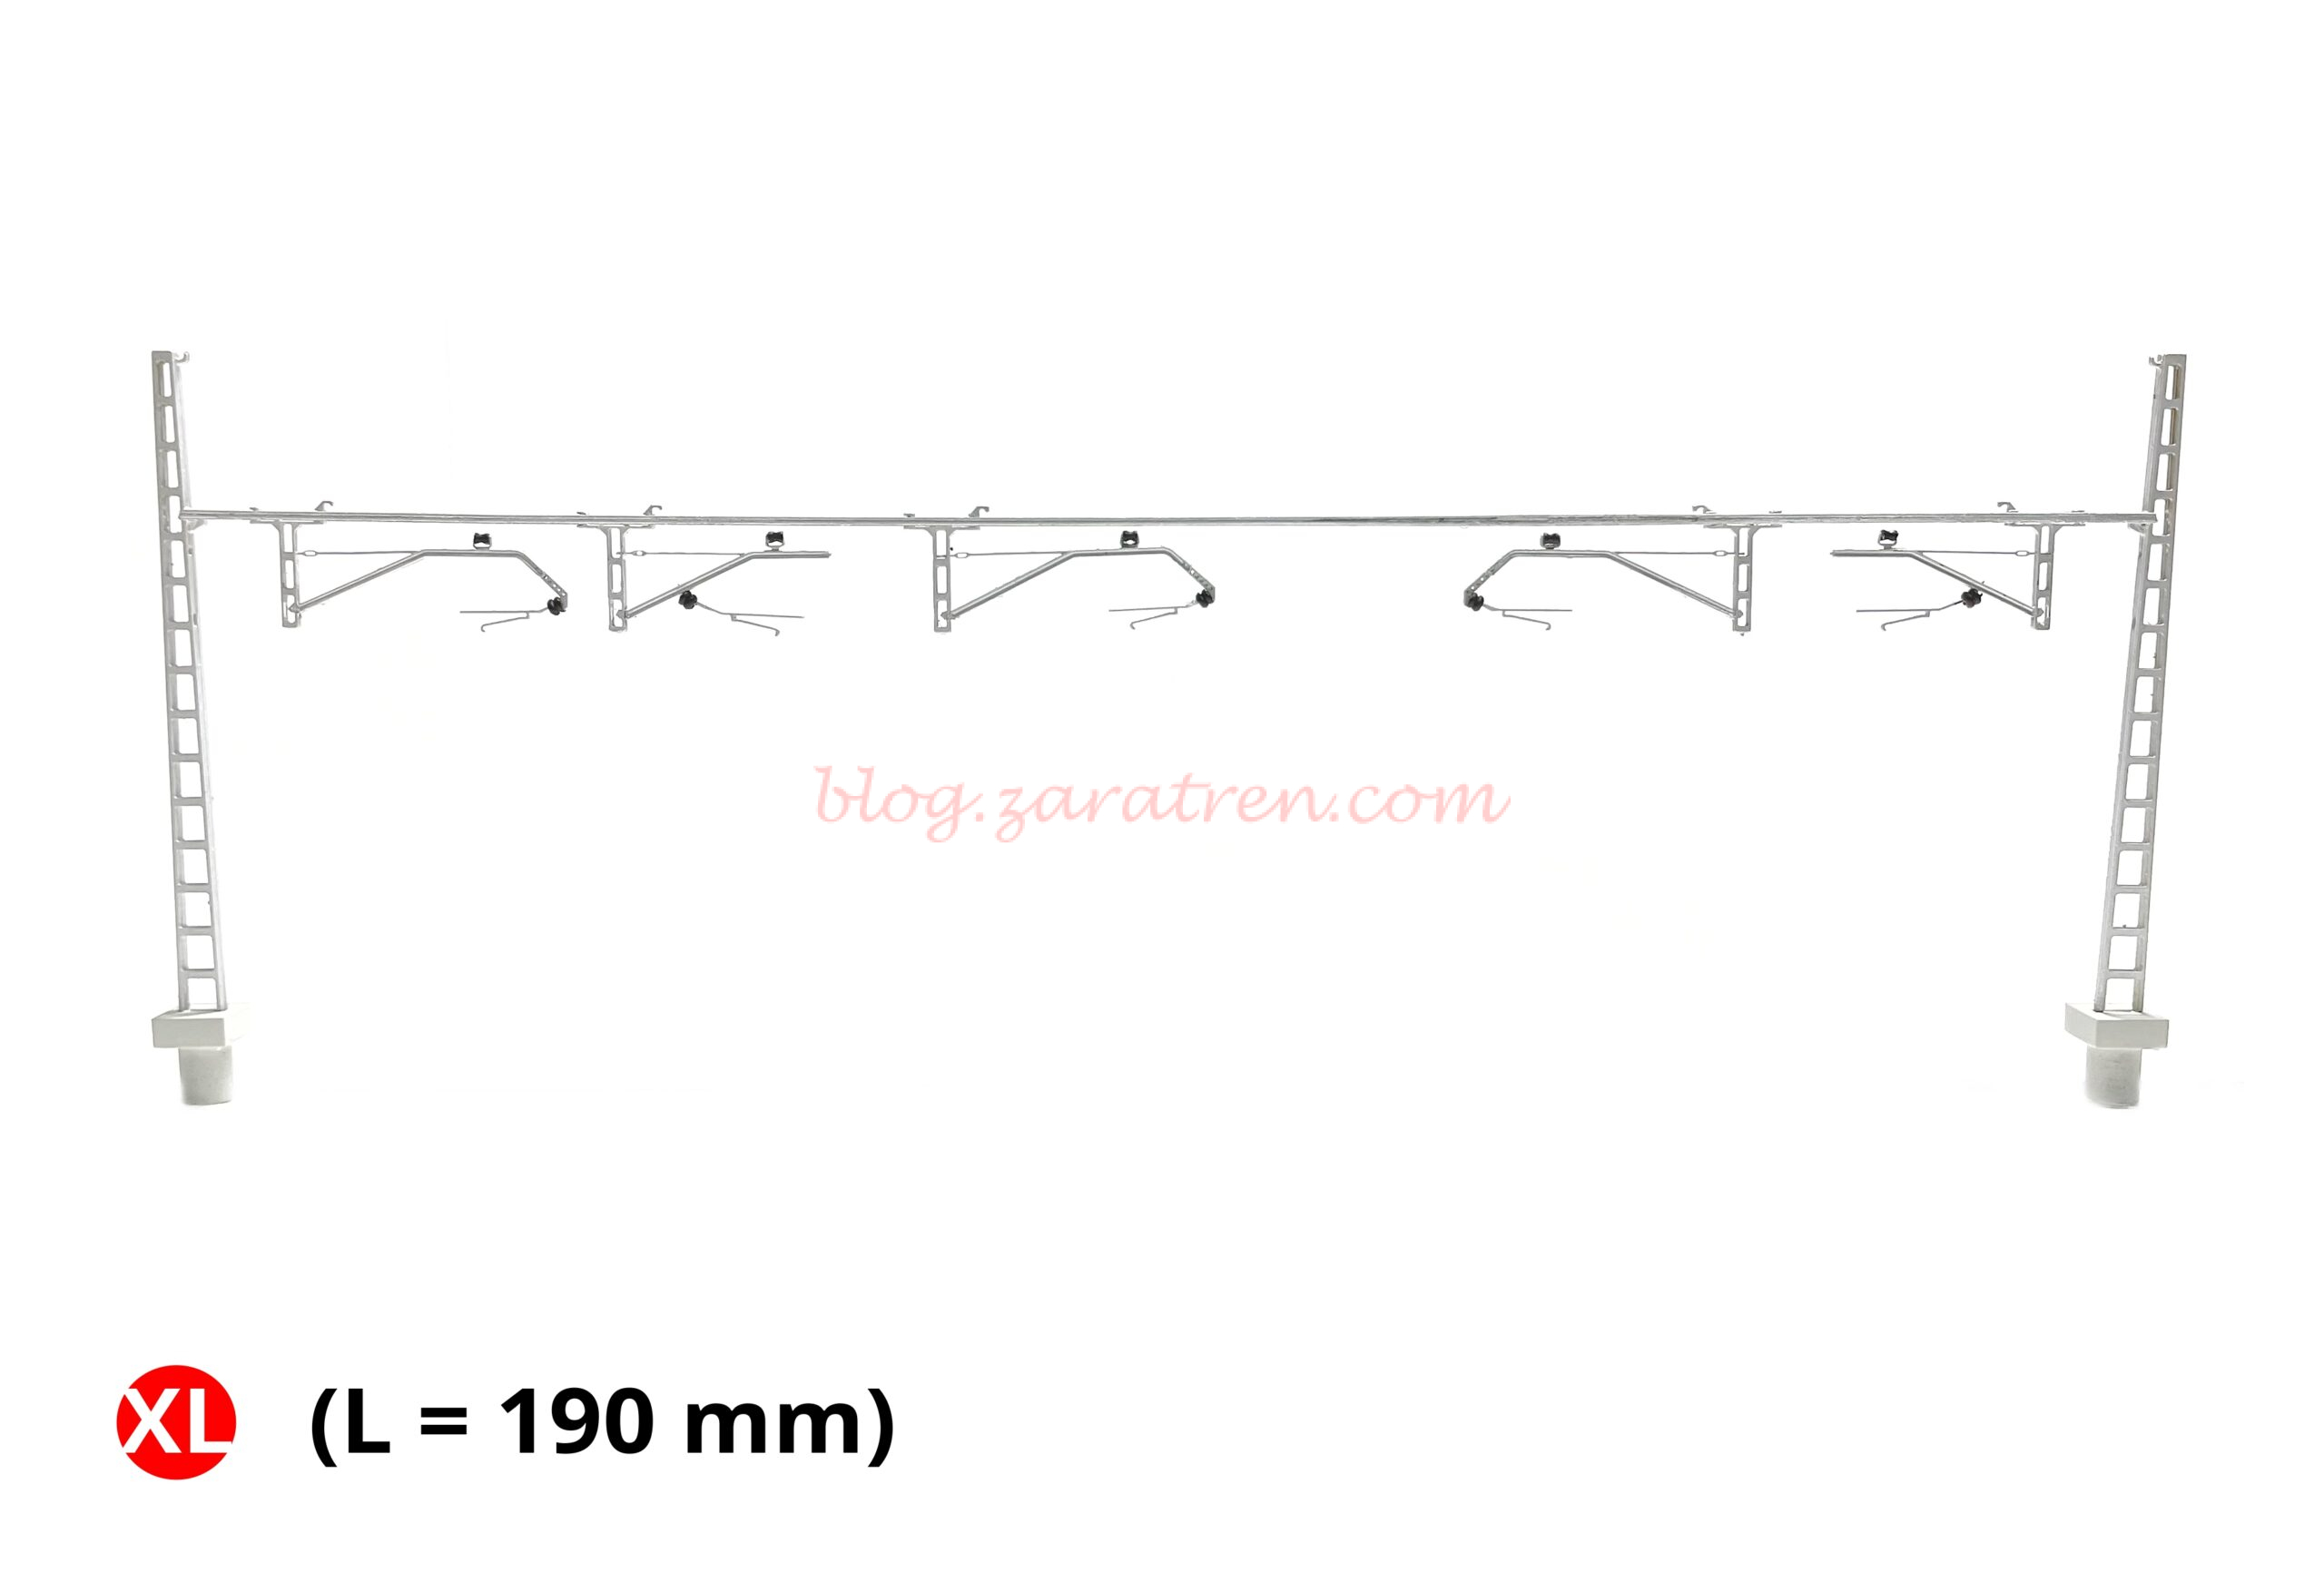 N-Train – Portico Rigido Renfe, CR-160, seis ménsulas, 190 mm, Escala N, Ref: 21428.